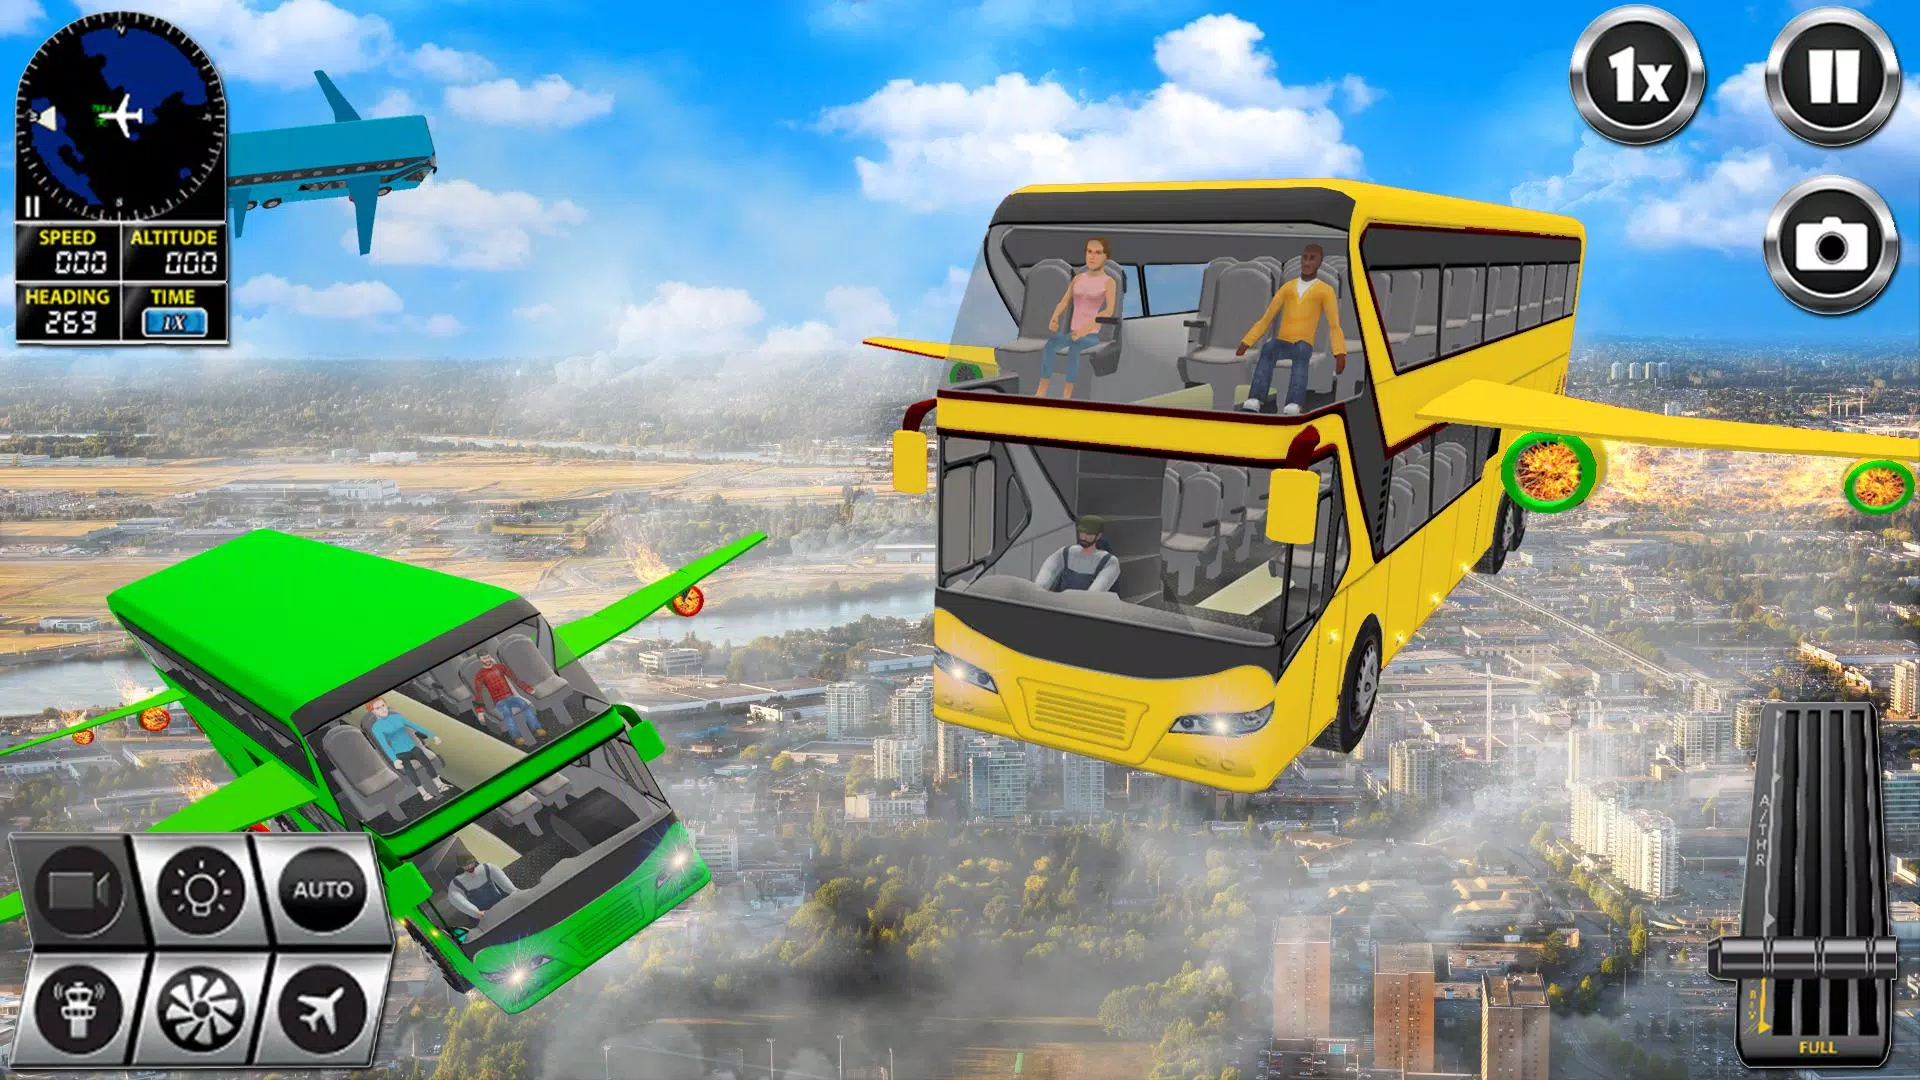 Bomb on The Bus: dirija um ônibus prestes a explodir nesse jogo de ação  para Android 